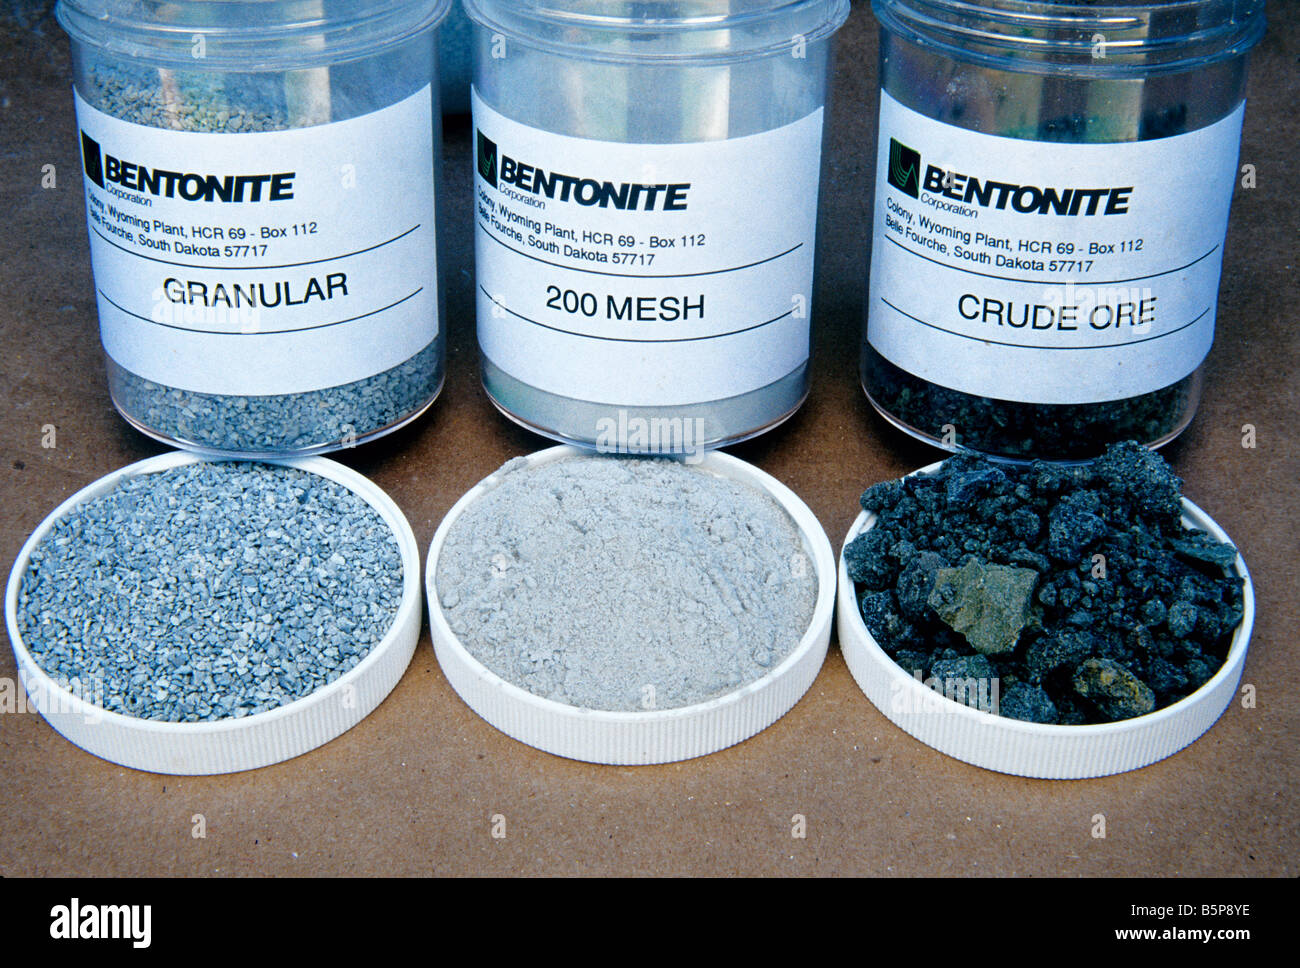 Bentonite specimens. Stock Photo